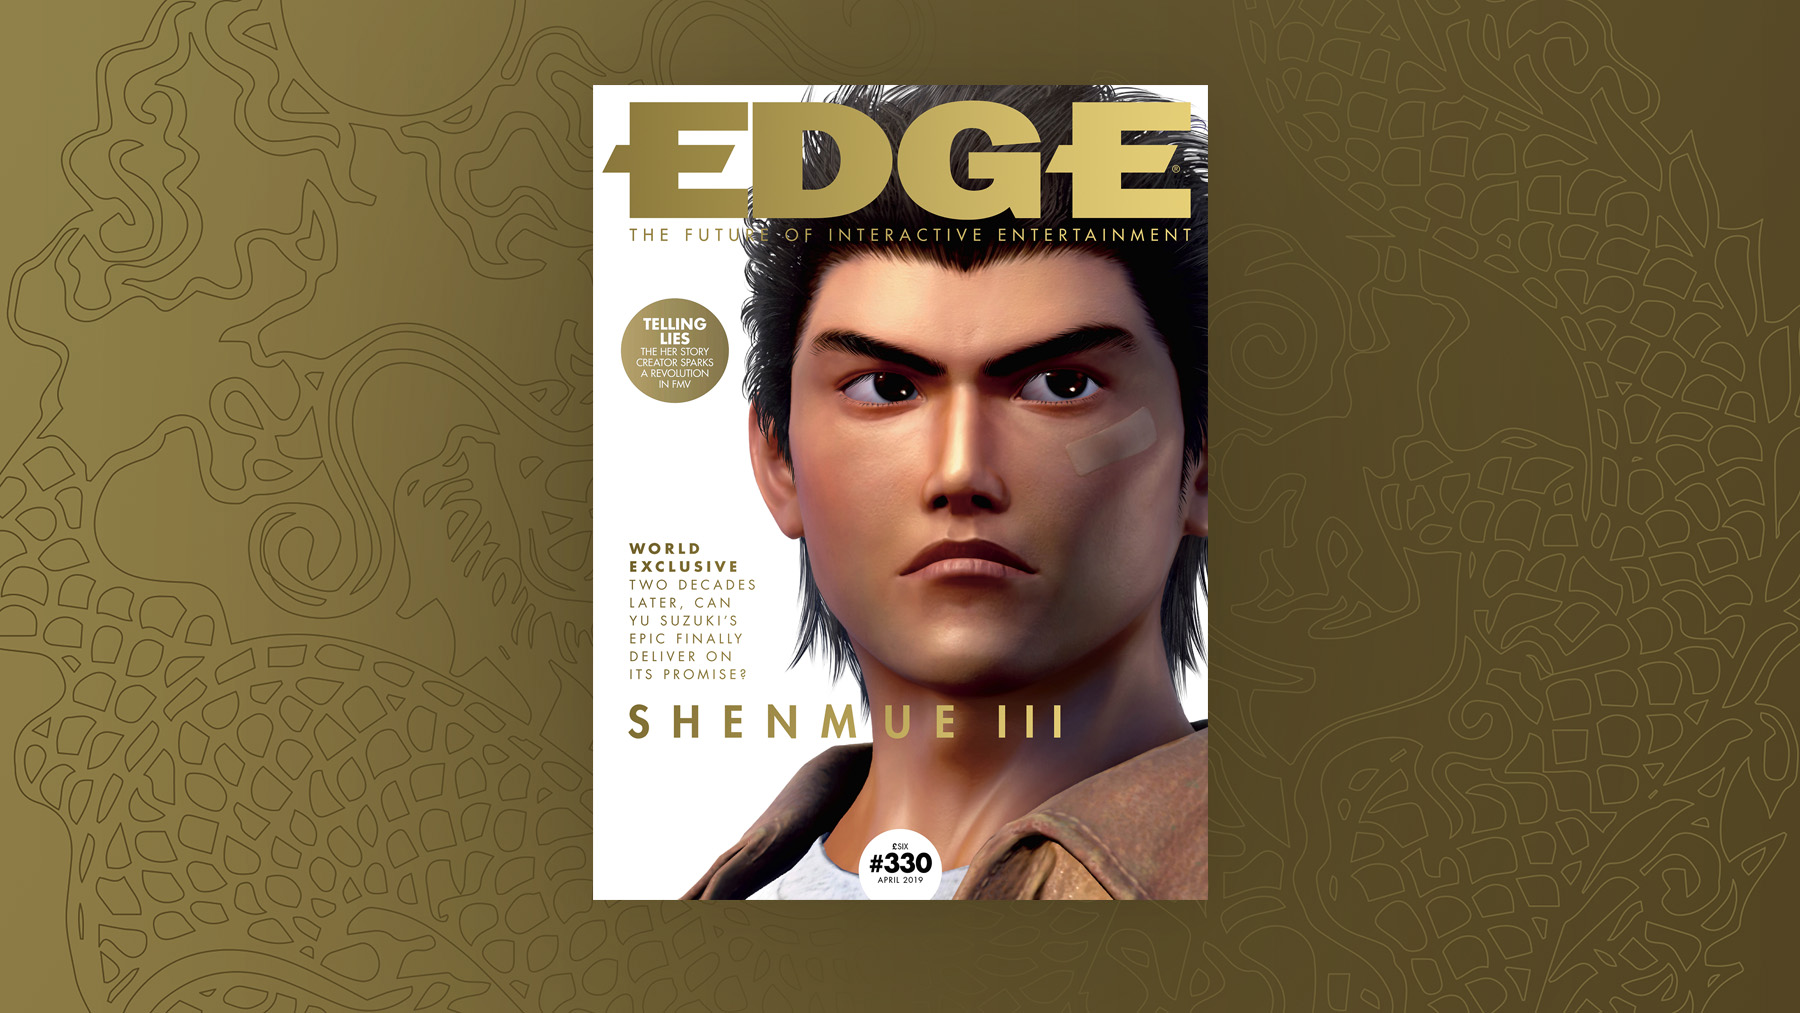 Shenmue 3 | Nuove informazioni dallo speciale su “Edge”